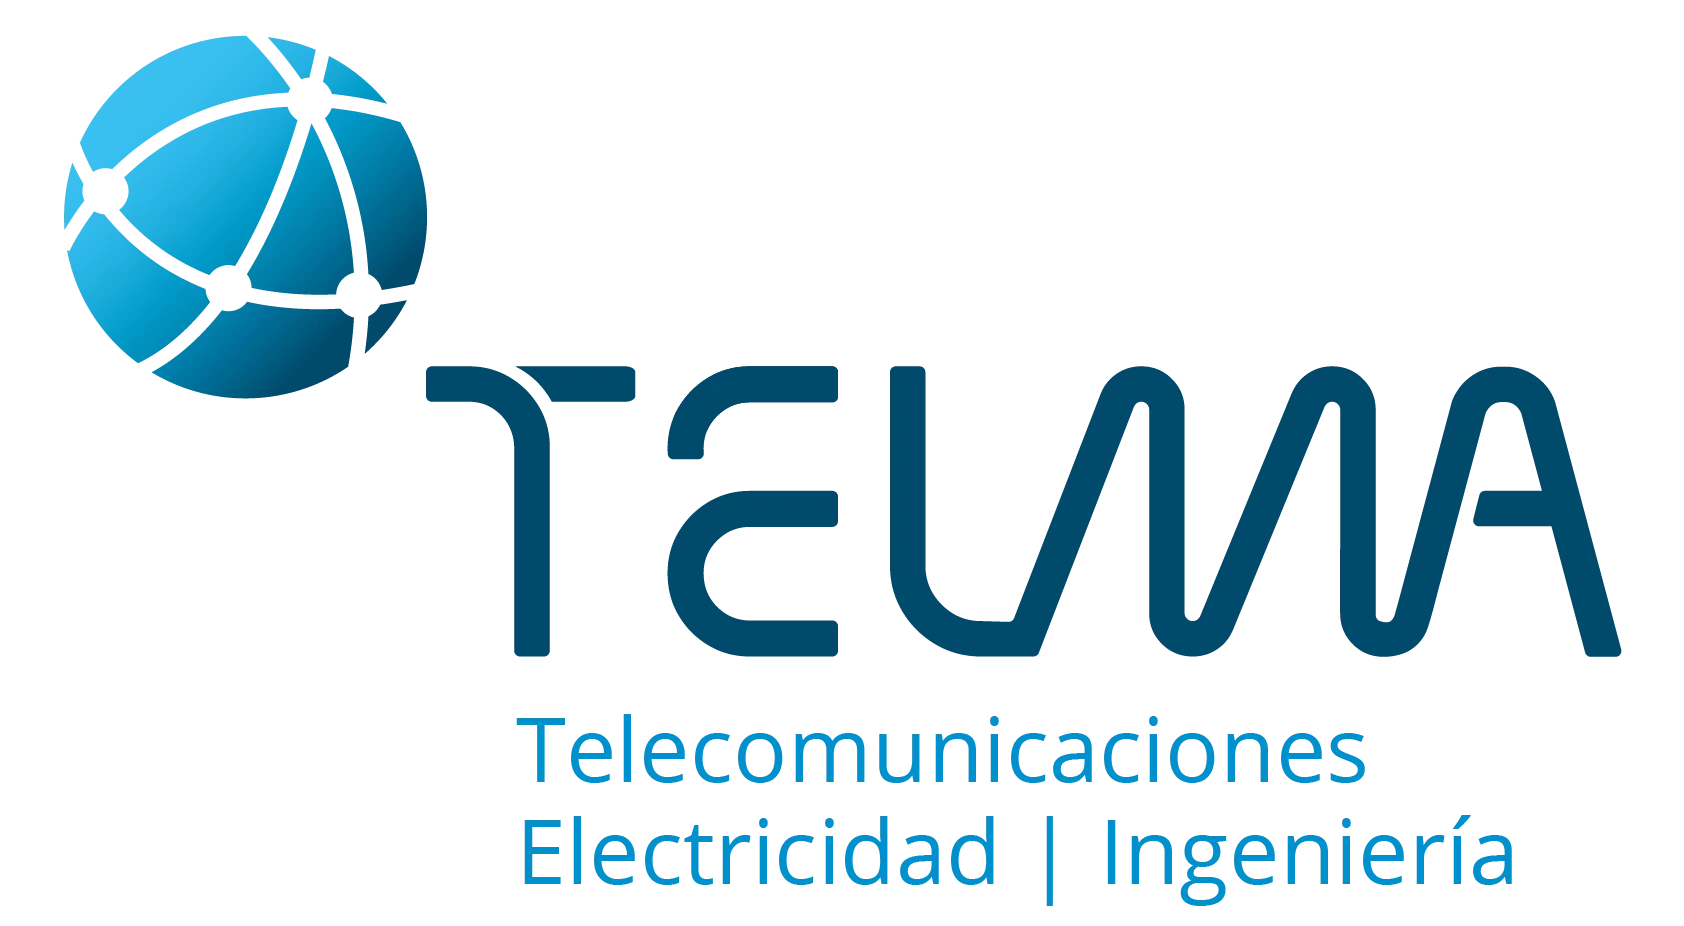 Logotipo Telma, instalaciones en telecomunicaciones, electricidad y fotovoltaica